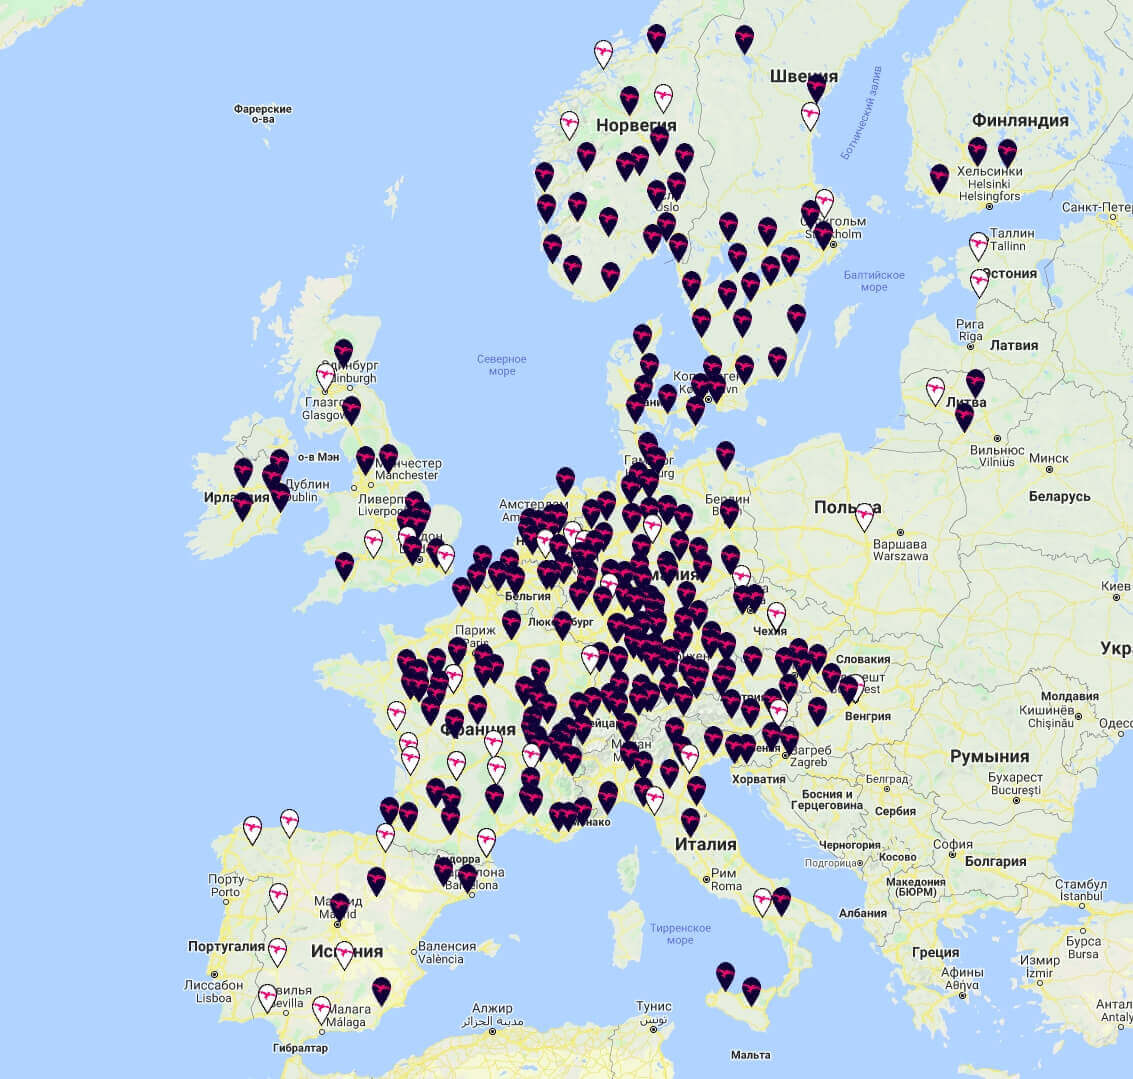 Сеть сверхмощных зарядных станций IONITY в Европе на 16 ноября 2020 года